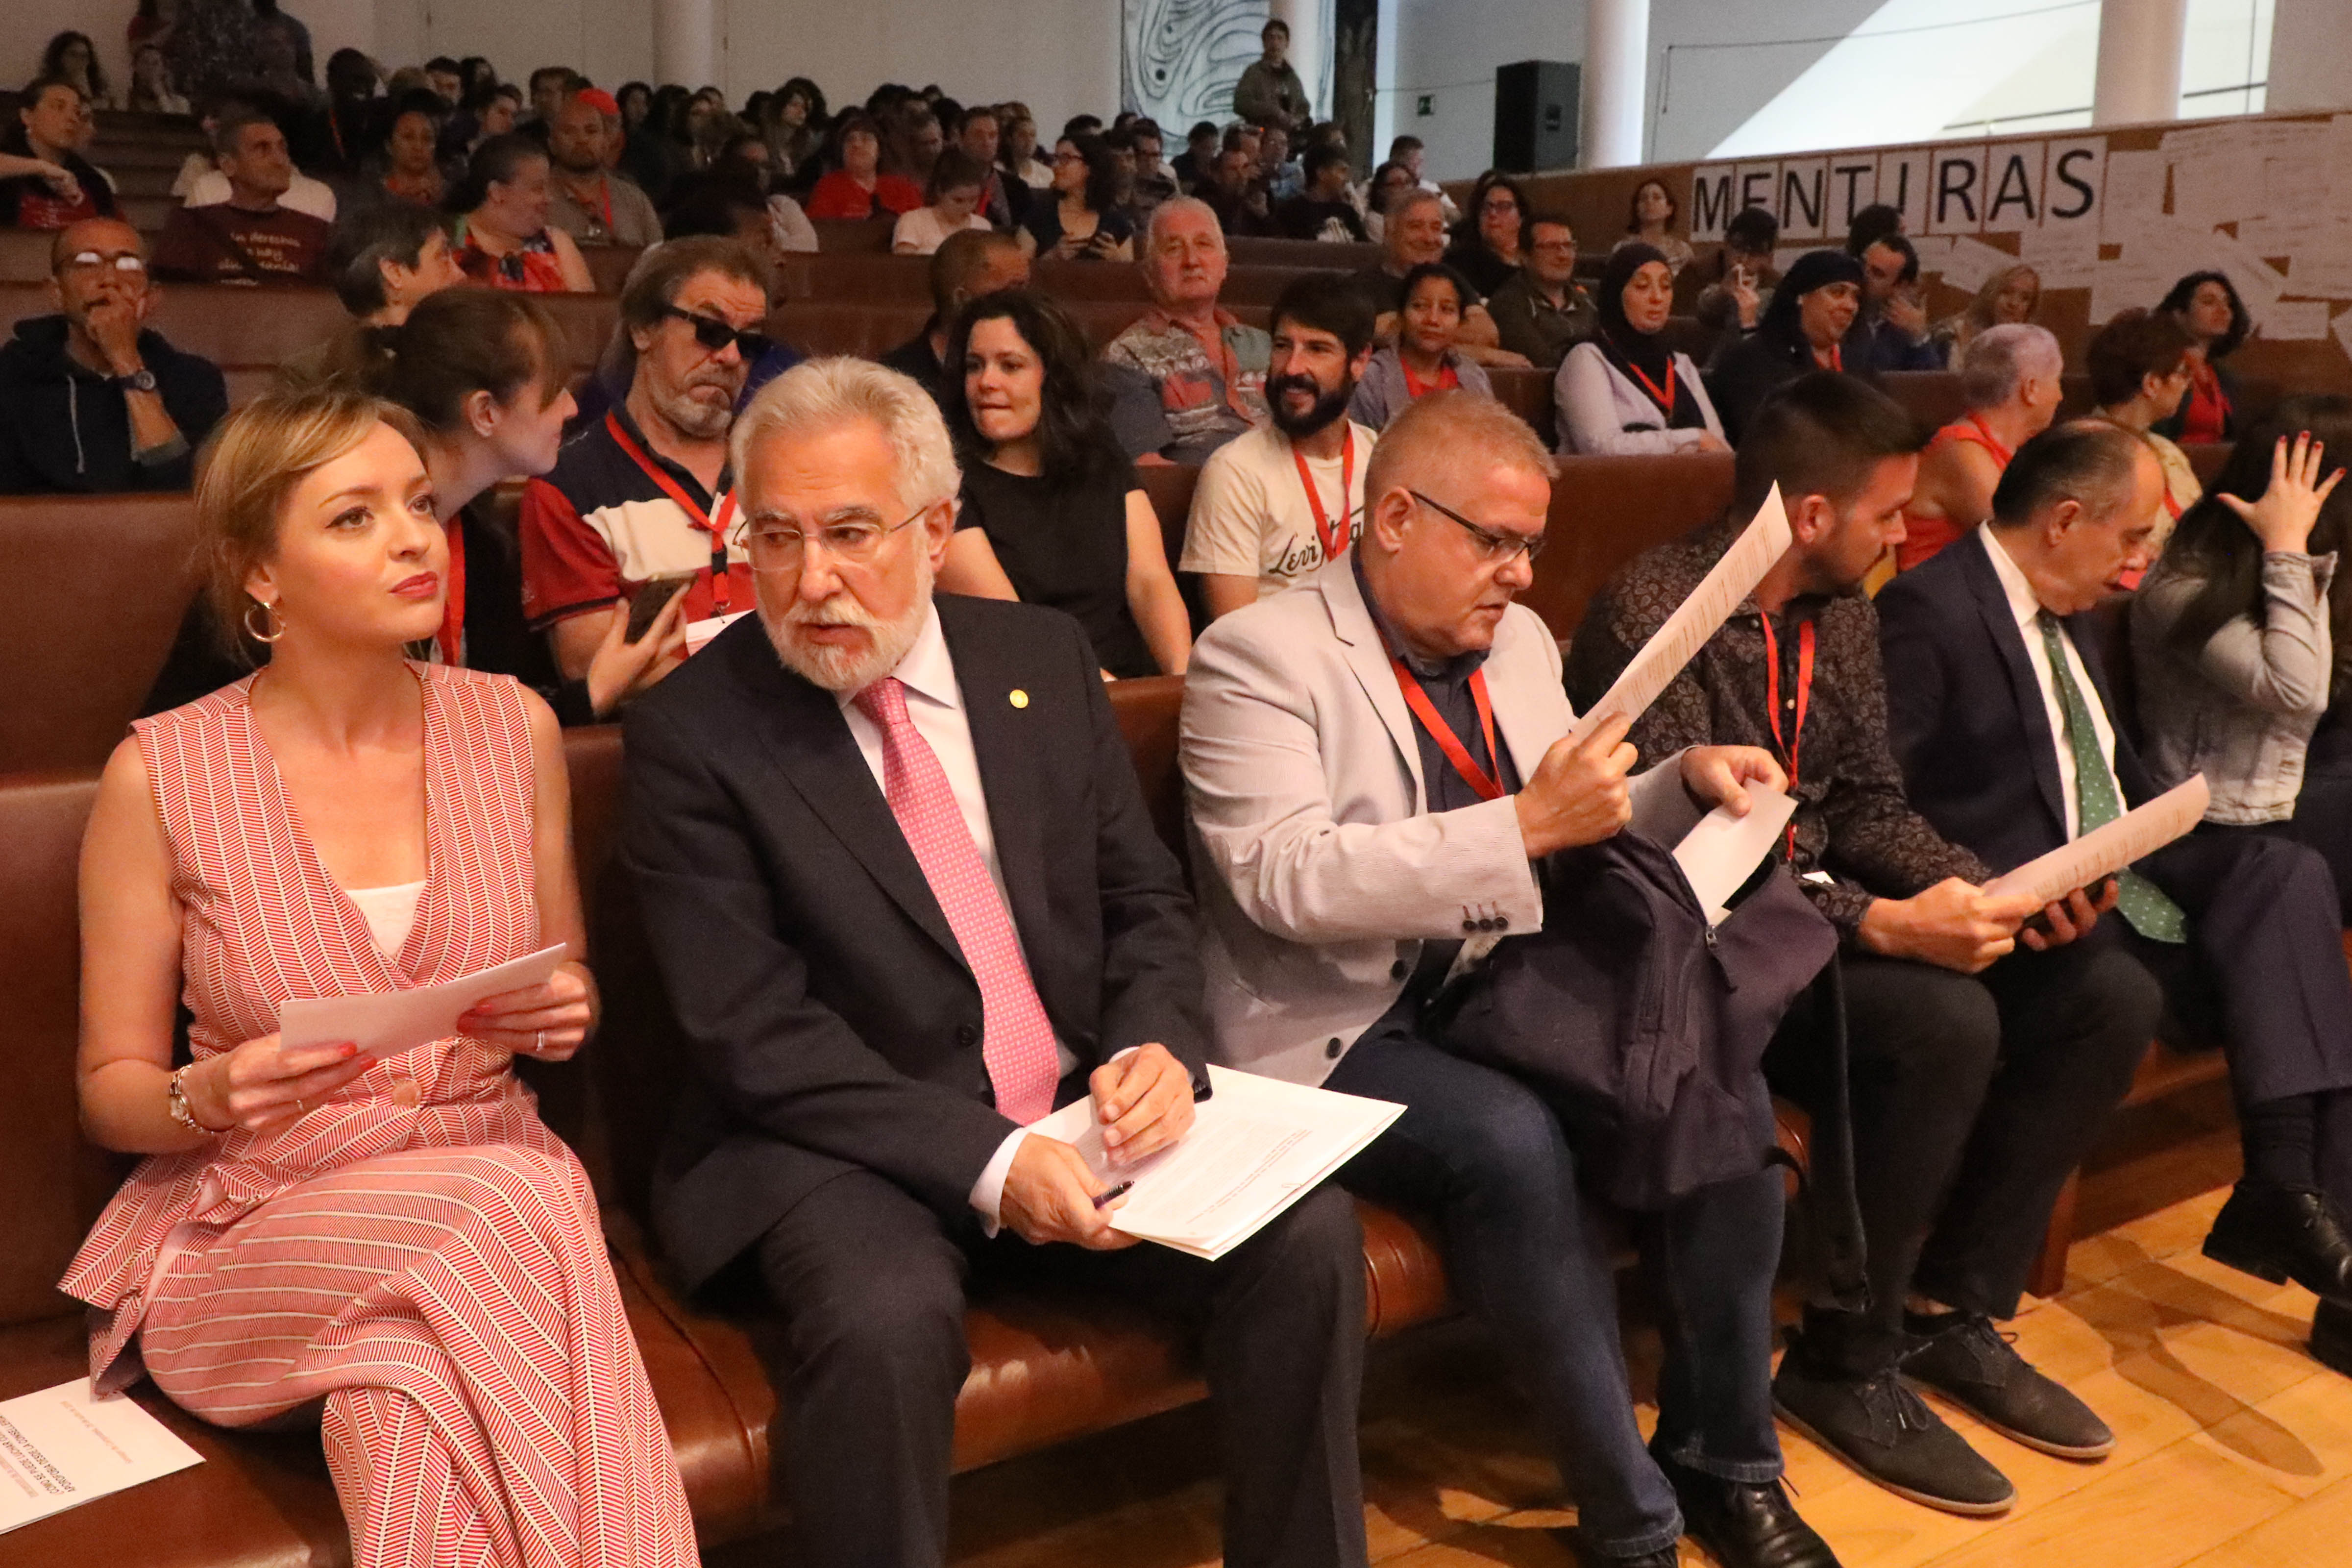 Santalices reitera a “intensa vocación social” do Parlamento de Galicia